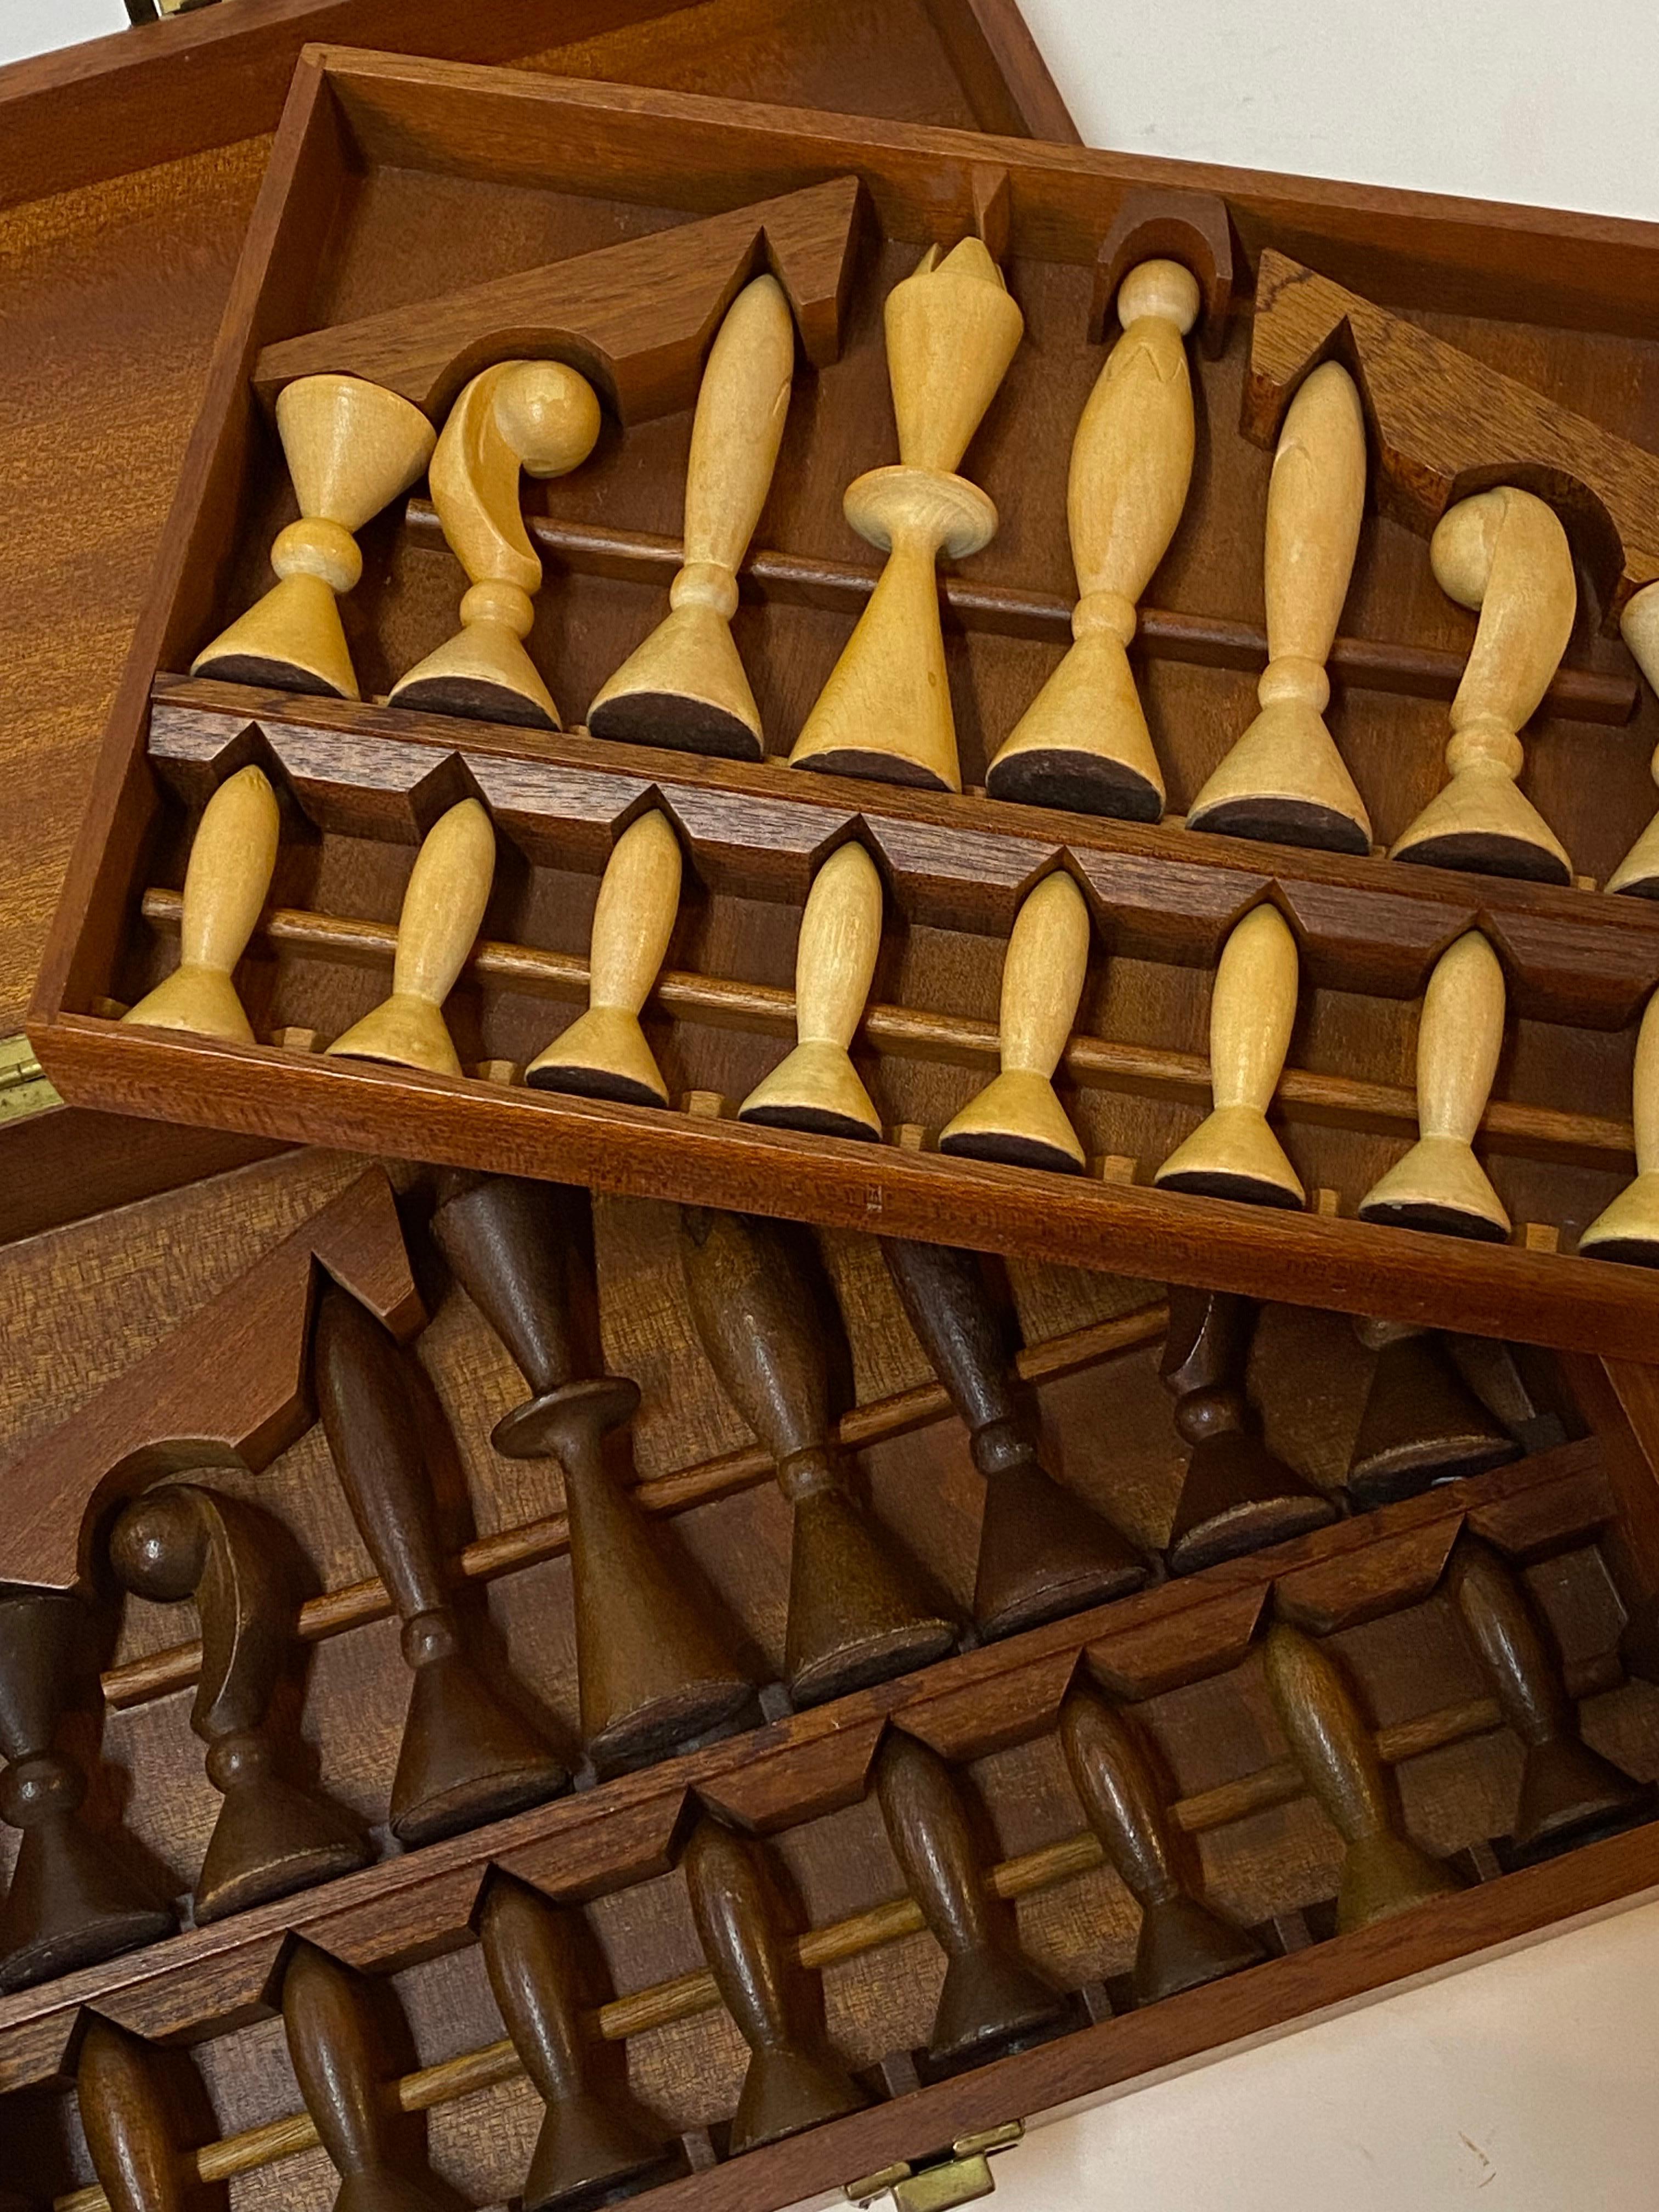 Un beau coffret d'échecs modernistes en bois sculpté. Les deux ensembles sont en bois dur et sculptés dans des formes très stylisées. L'un des ensembles est en finition naturelle en bois blond et l'autre en noyer brun. Toutes les pièces sont